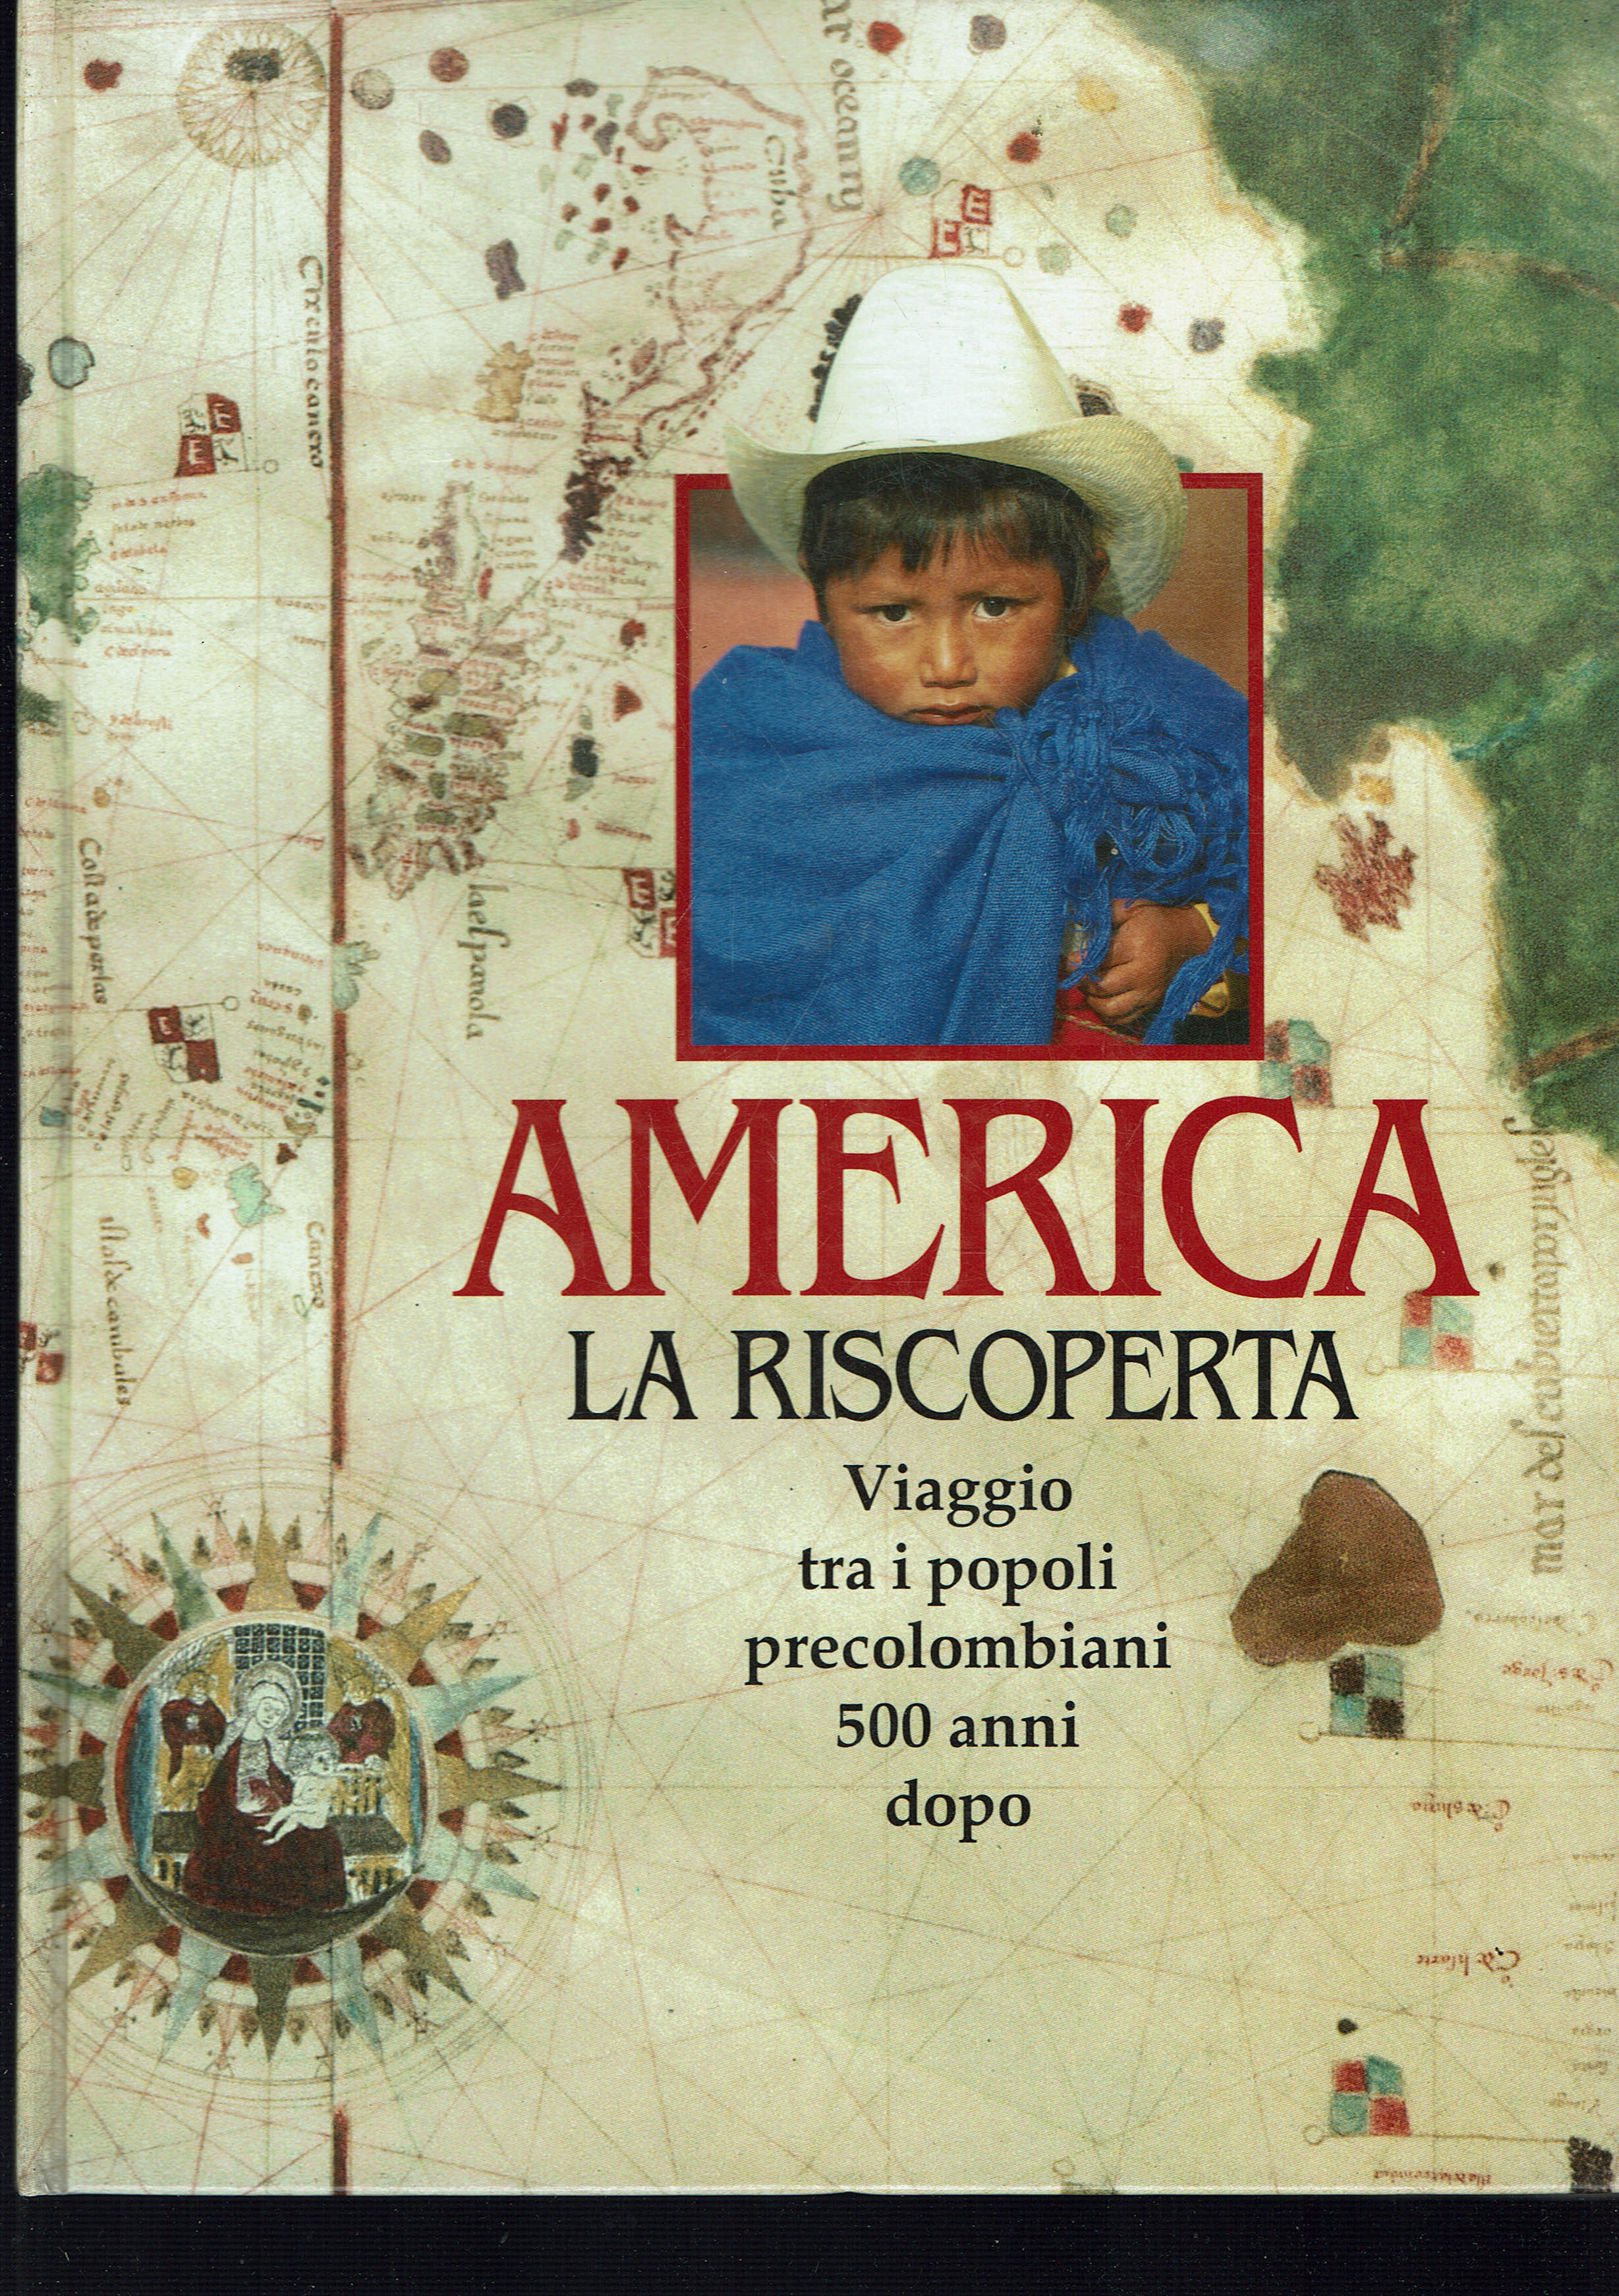 America la riscoperta,viaggio tra i popoli precolombiani 500 anni dopo